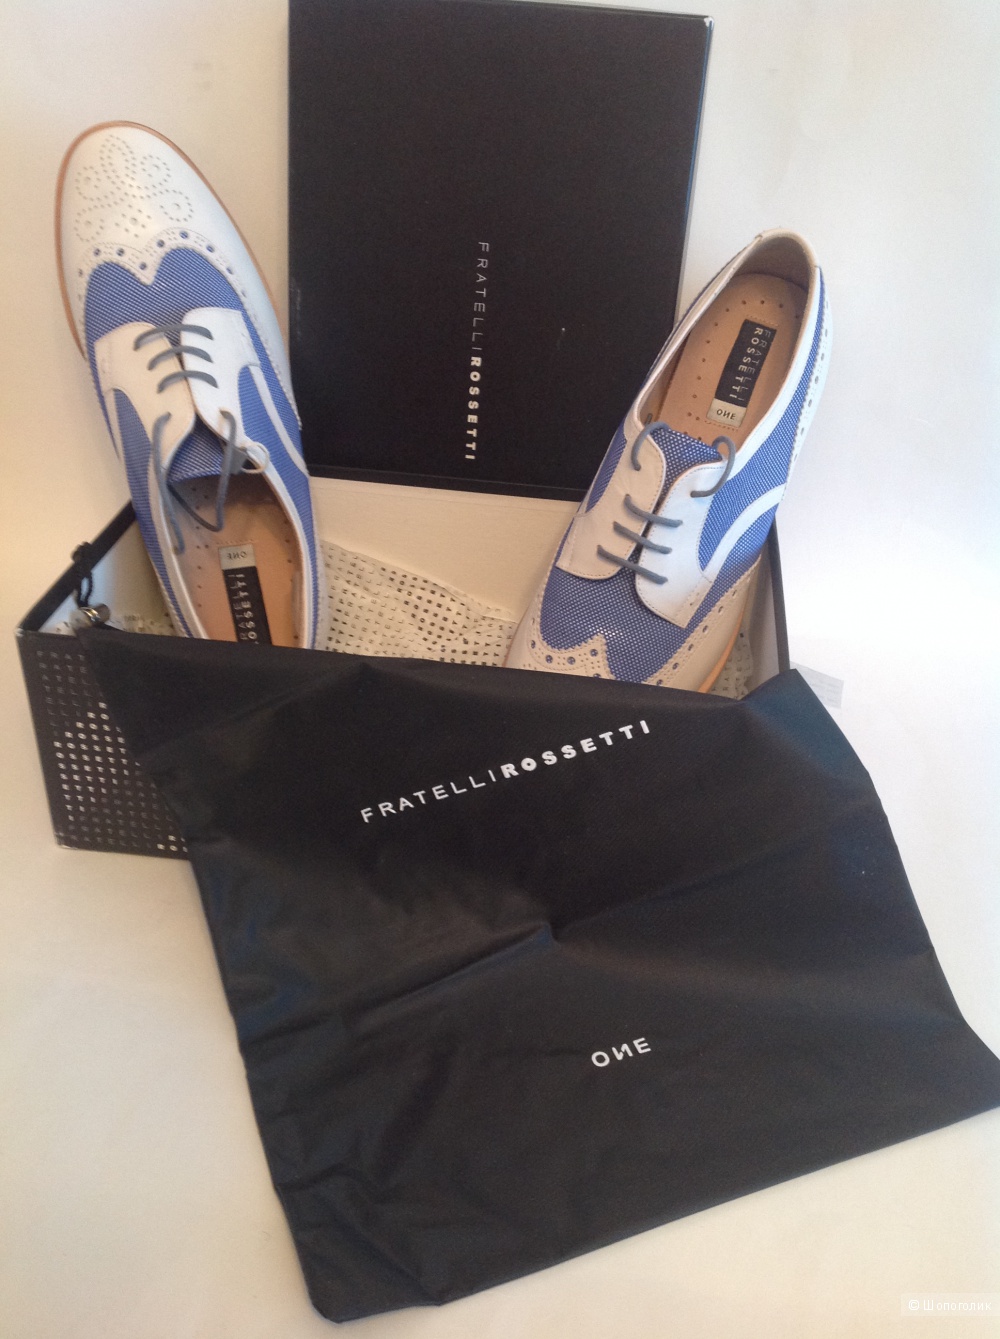 Стильные итальянские новые супермодные ботинки бренда Fratelli Rossetti One размер 38,5-39